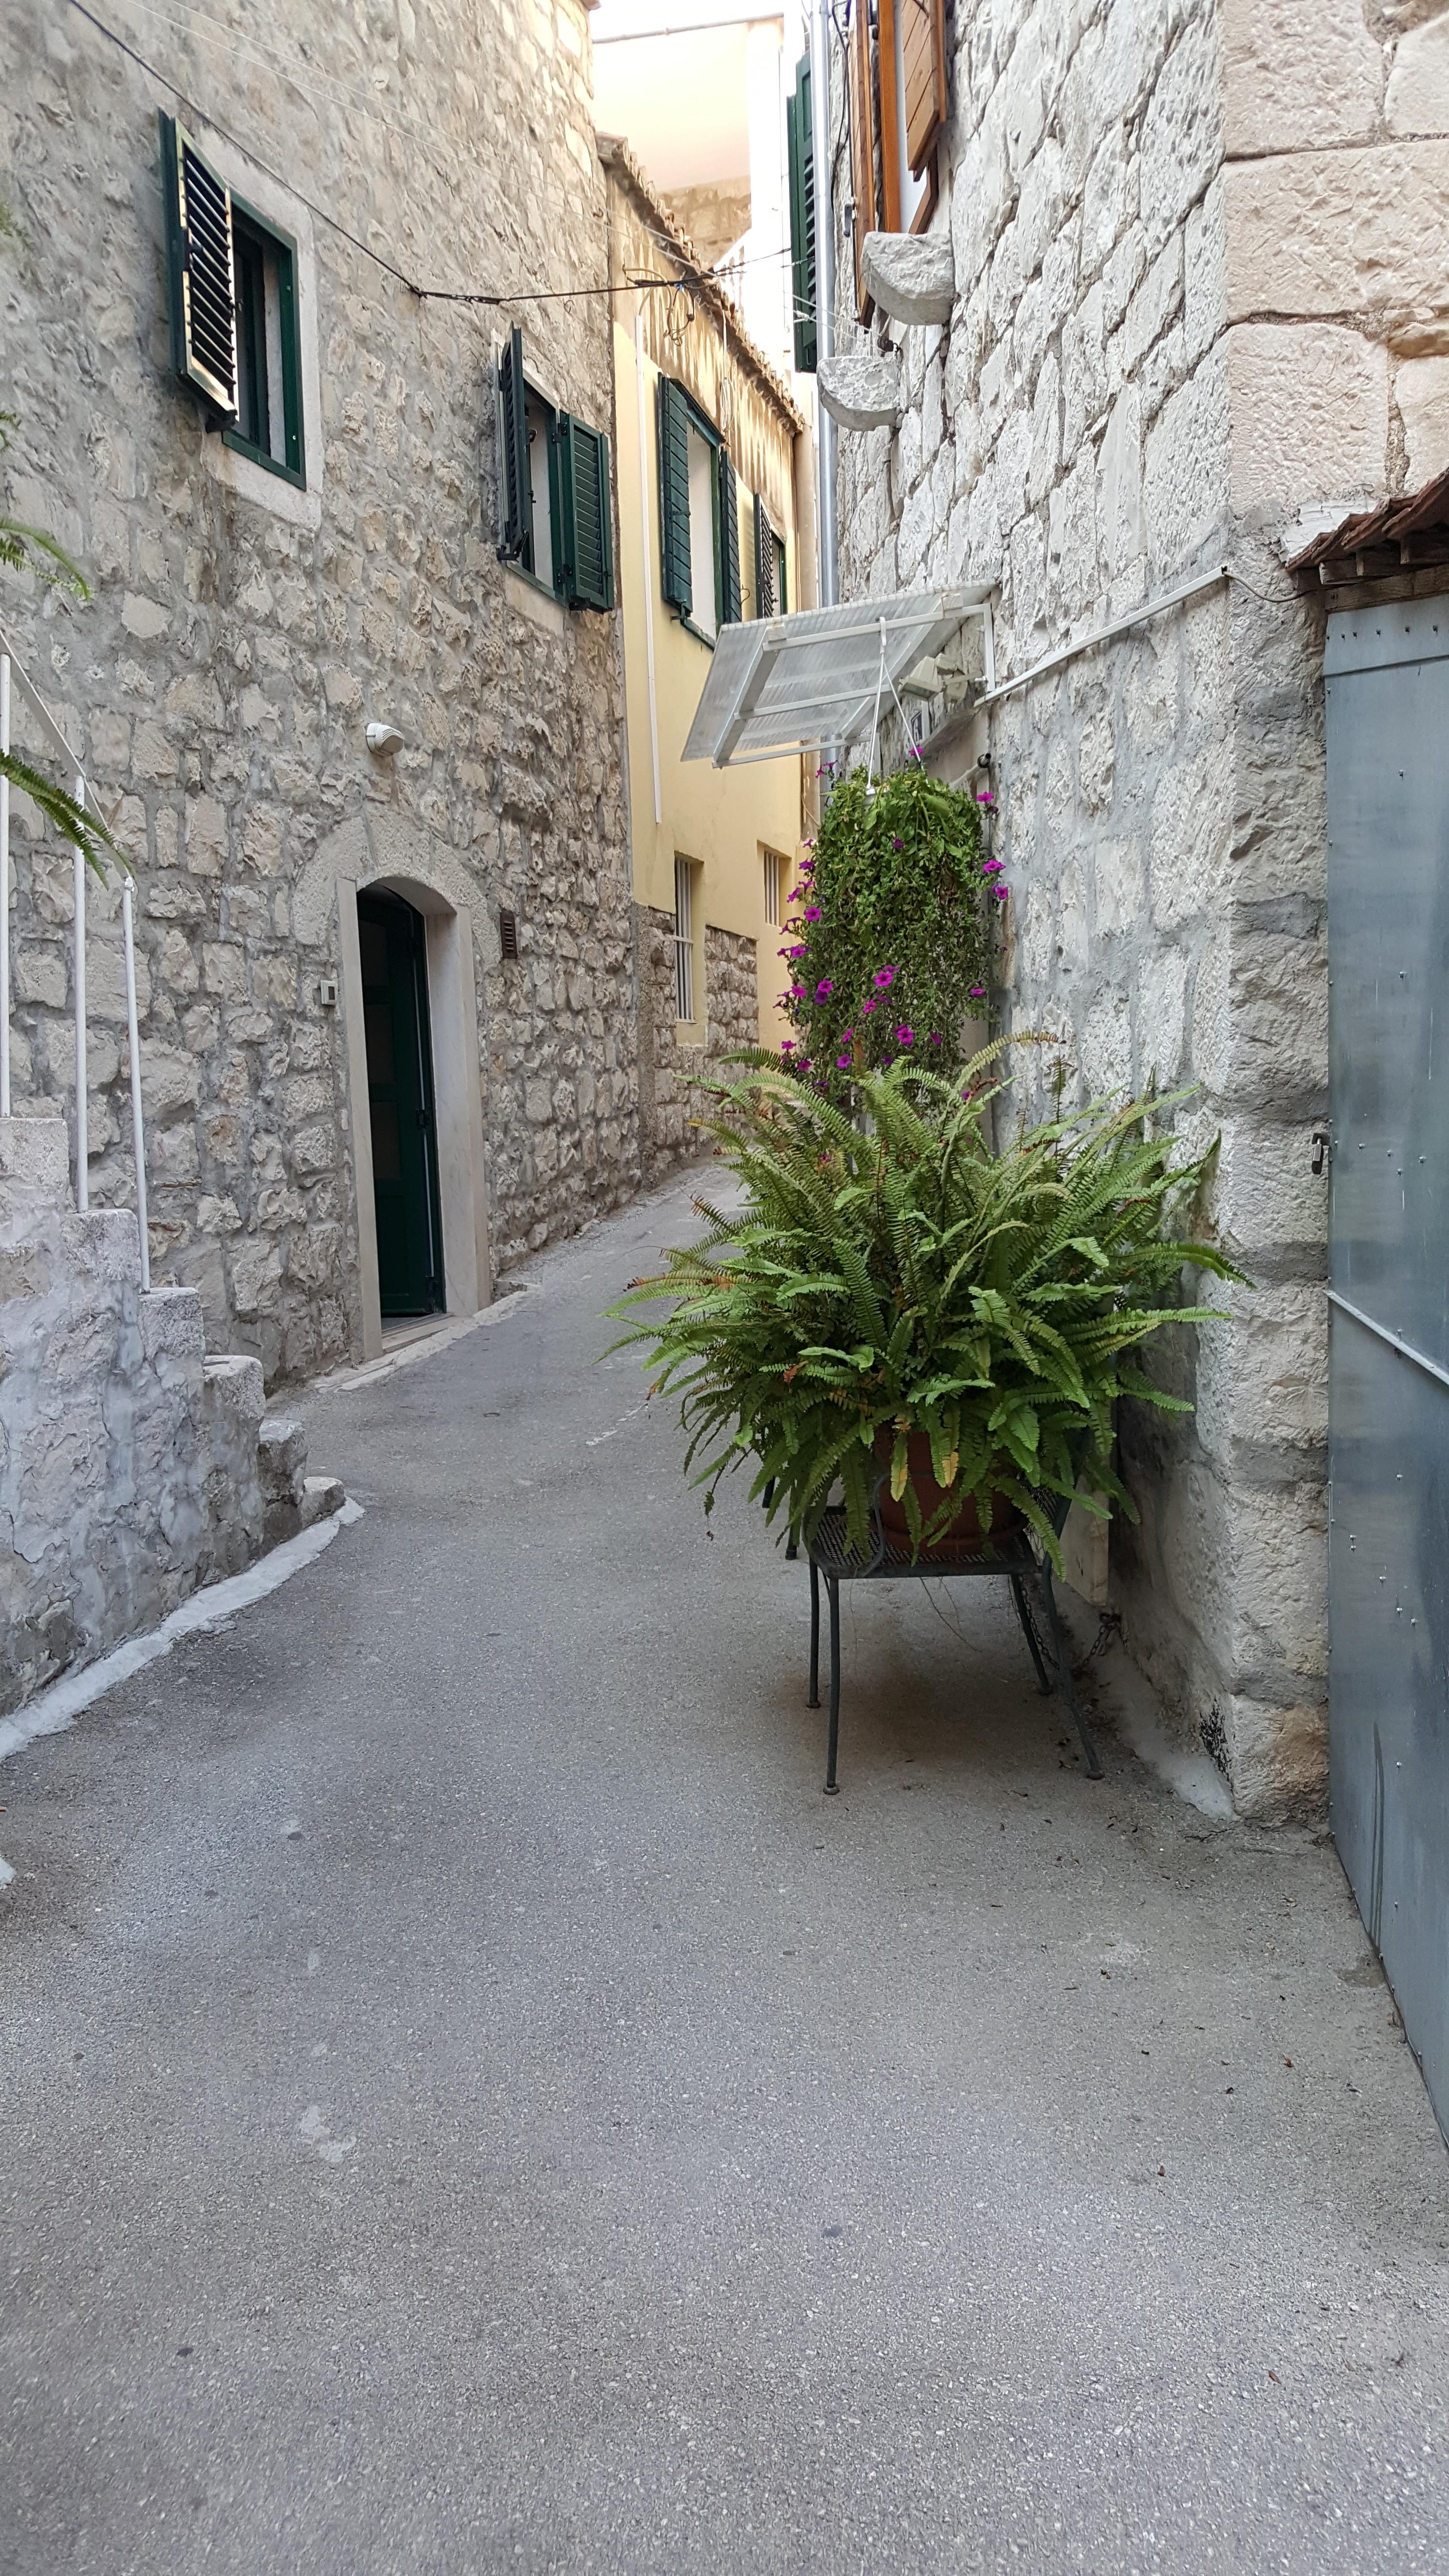 Damals, in Dubrovnik... seufz... Überall gab es Farne in den Gassen. *_*
#pflanzenliebe #fernweh